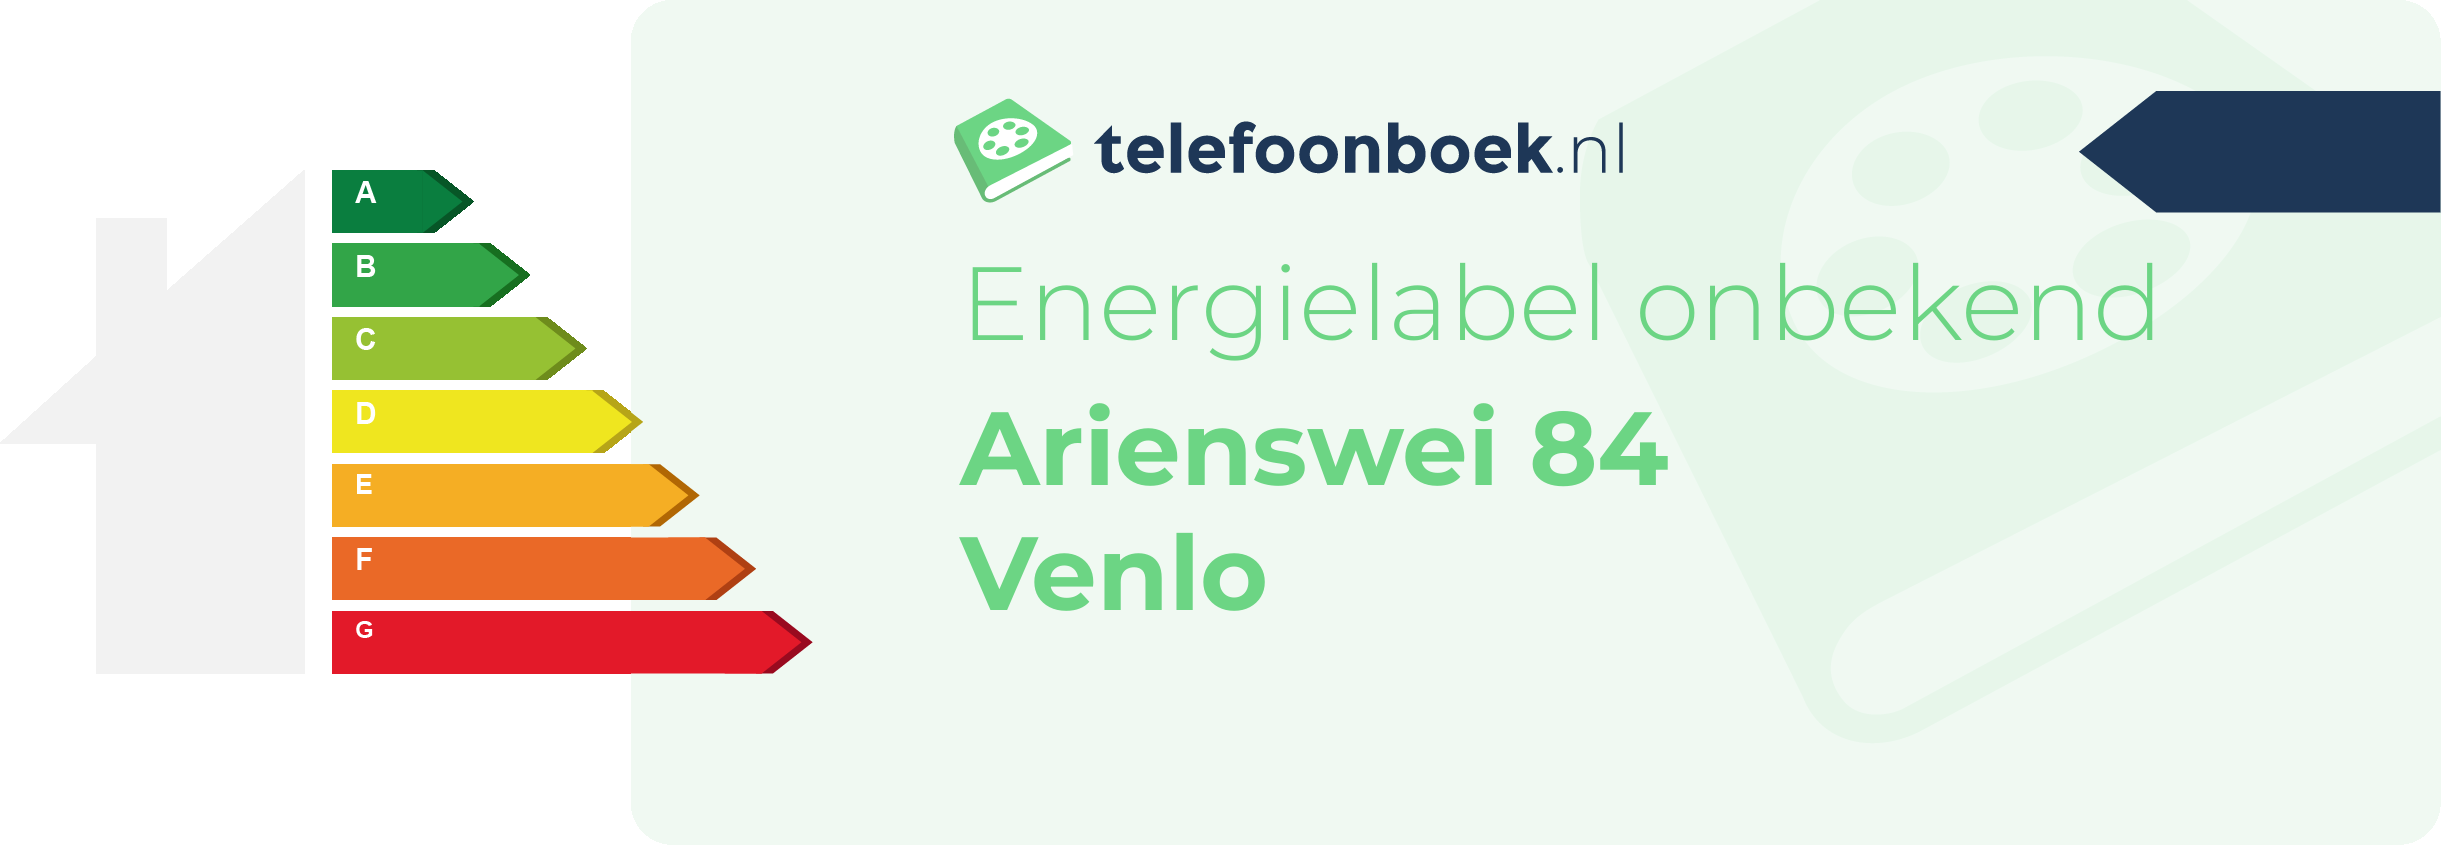 Energielabel Arienswei 84 Venlo